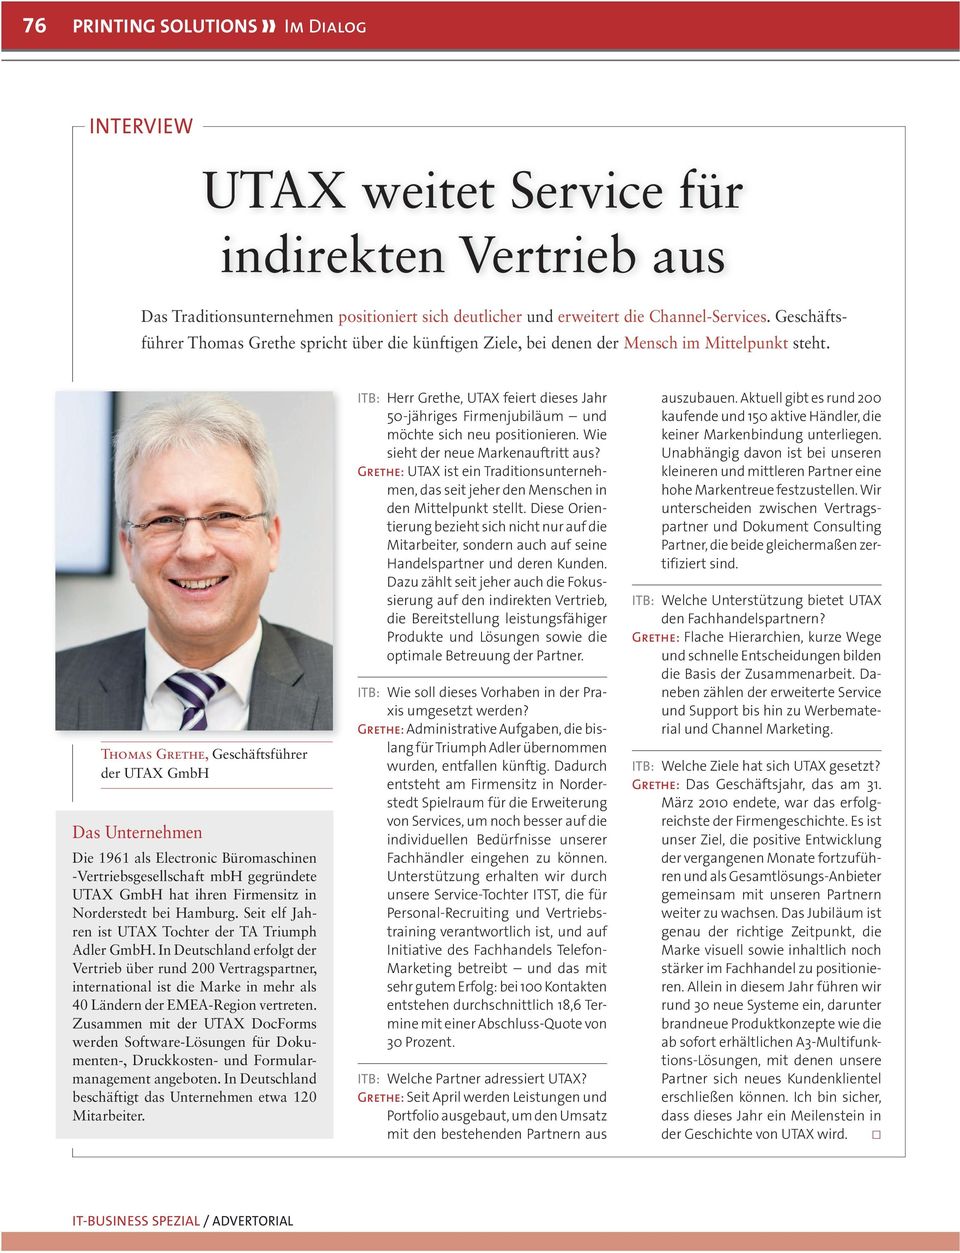 Thomas Grethe, Geschäftsführer der UTAX GmbH Das Unternehmen Die 1961 als Electronic Büromaschinen -Vertriebsgesellschaft mbh gegründete UTAX GmbH hat ihren Firmensitz in Norderstedt bei Hamburg.